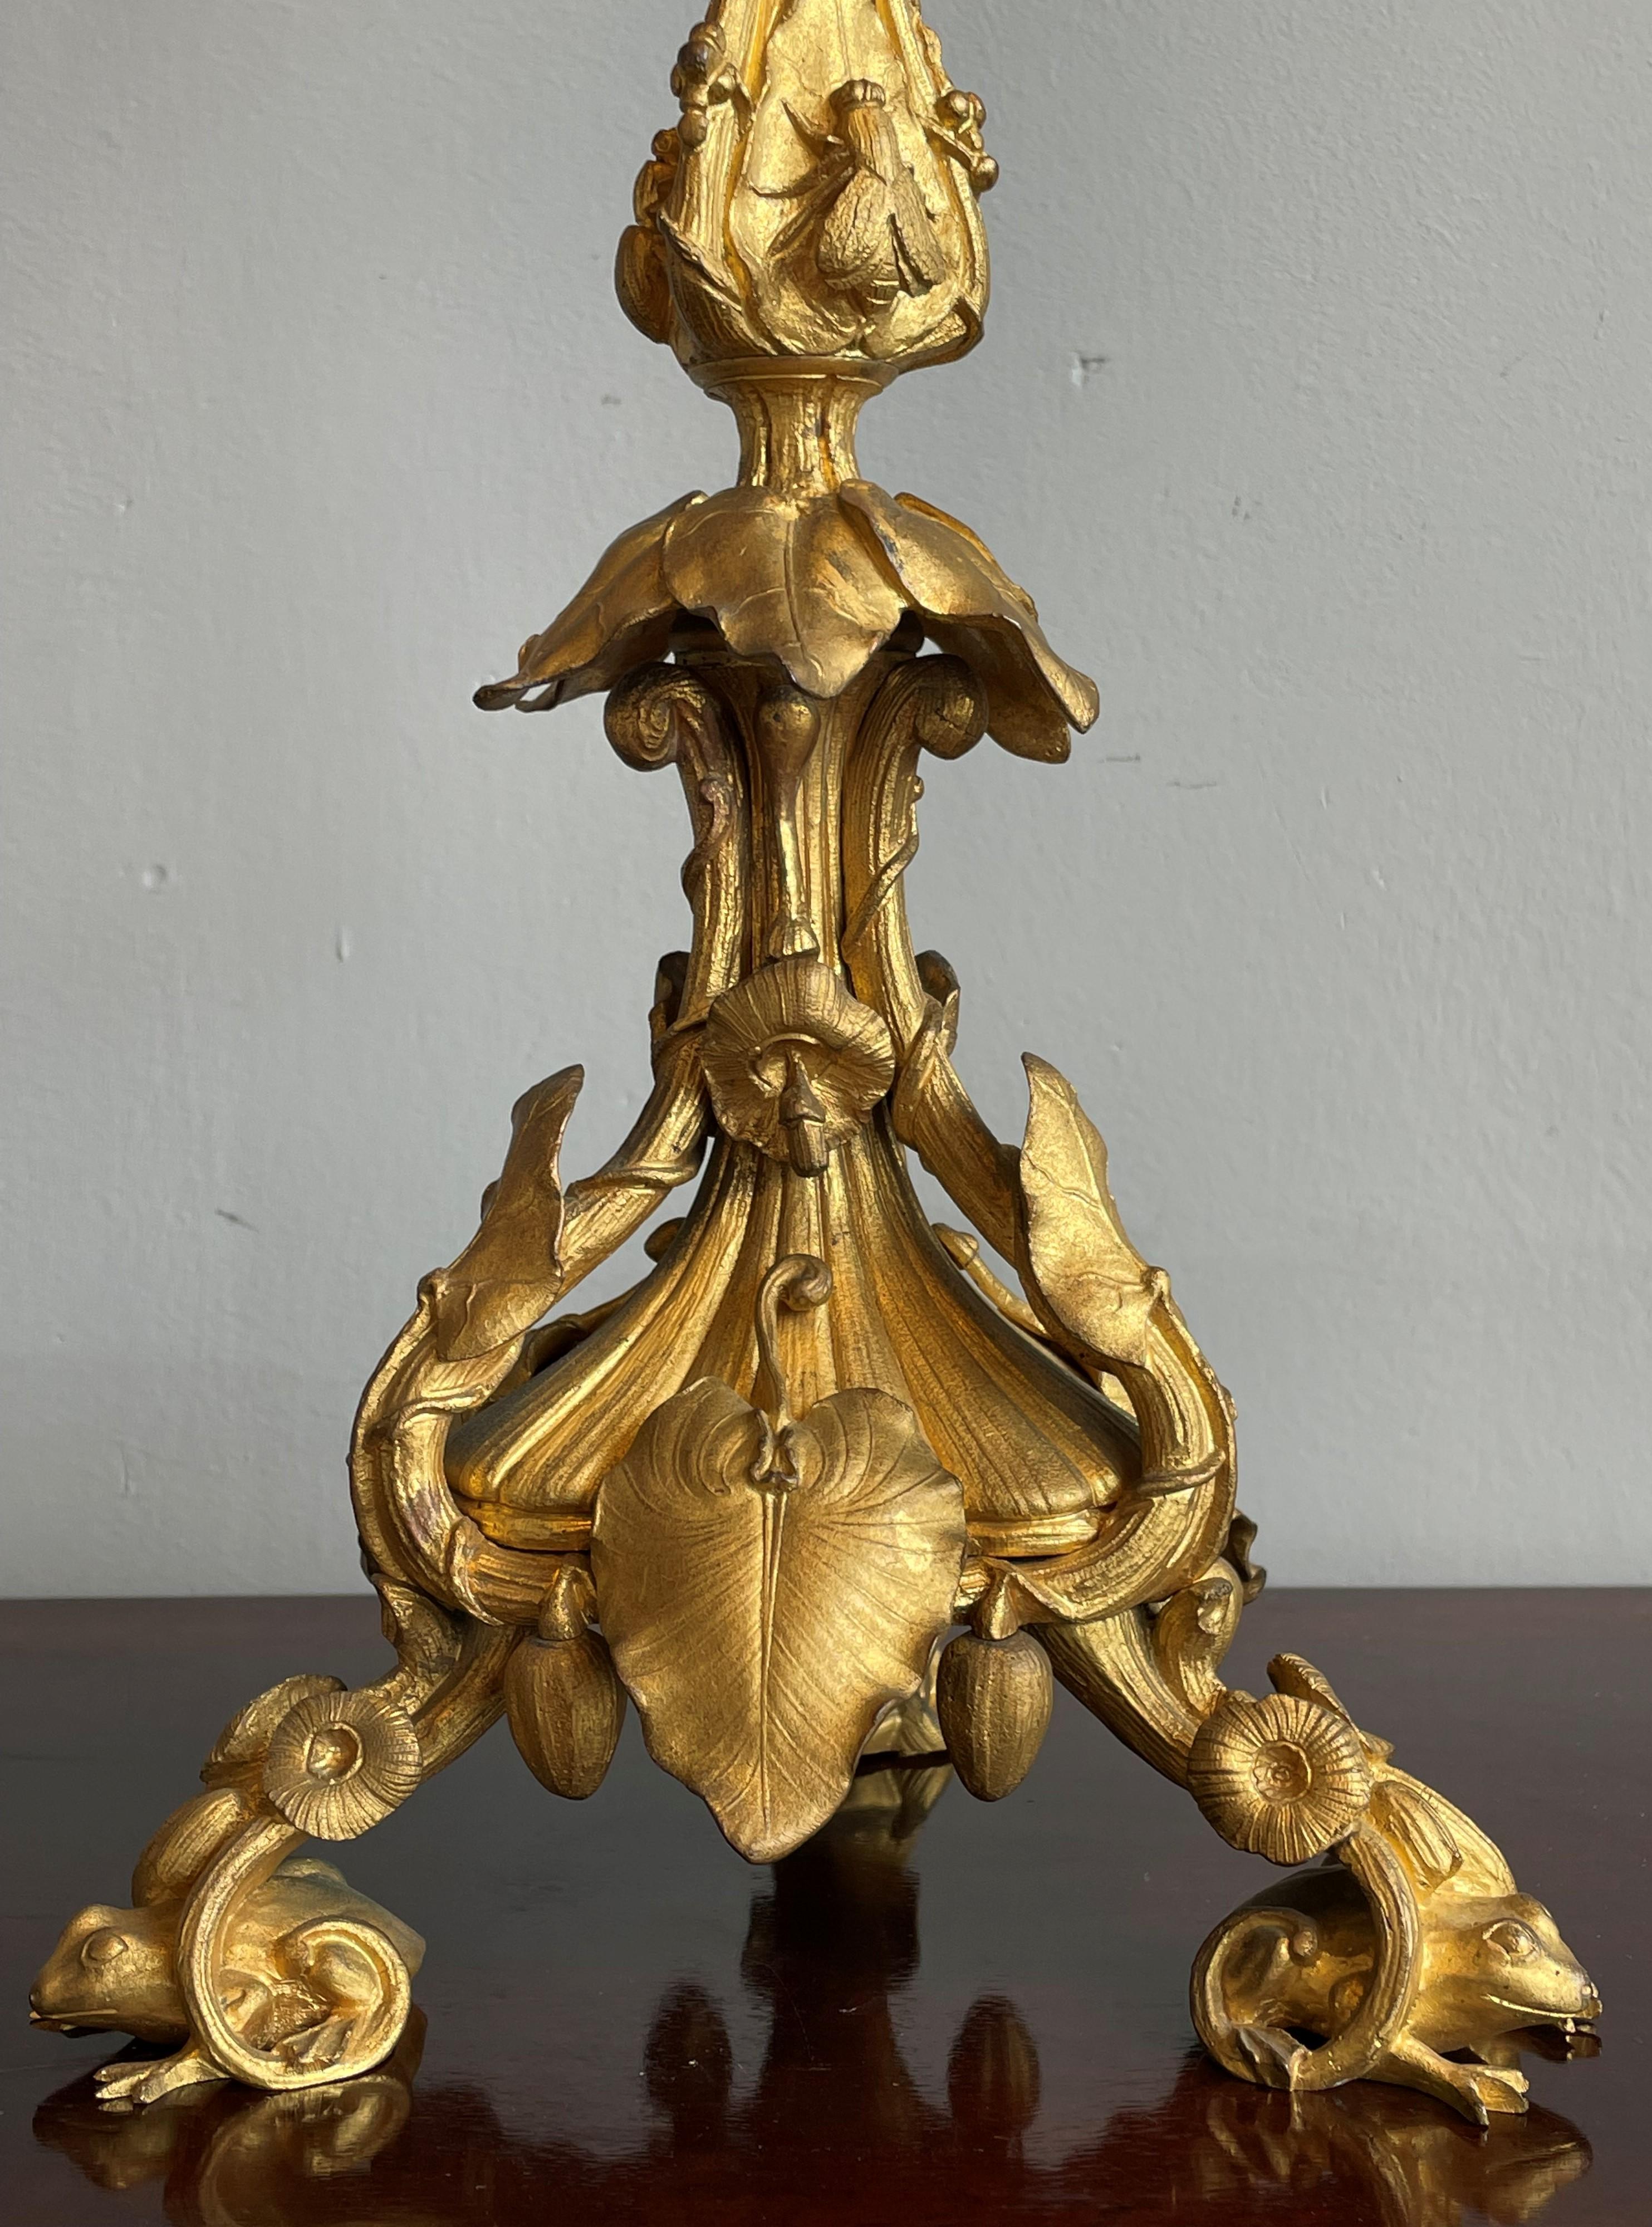 Paire unique de candélabres de table en bronze doré par Henri Picard de Paris, France.

Ces candélabres antiques étonnamment sculpturaux ont, pour plus d'une raison, un facteur de fascination. Tout d'abord, elles sont fabriquées par l'un des